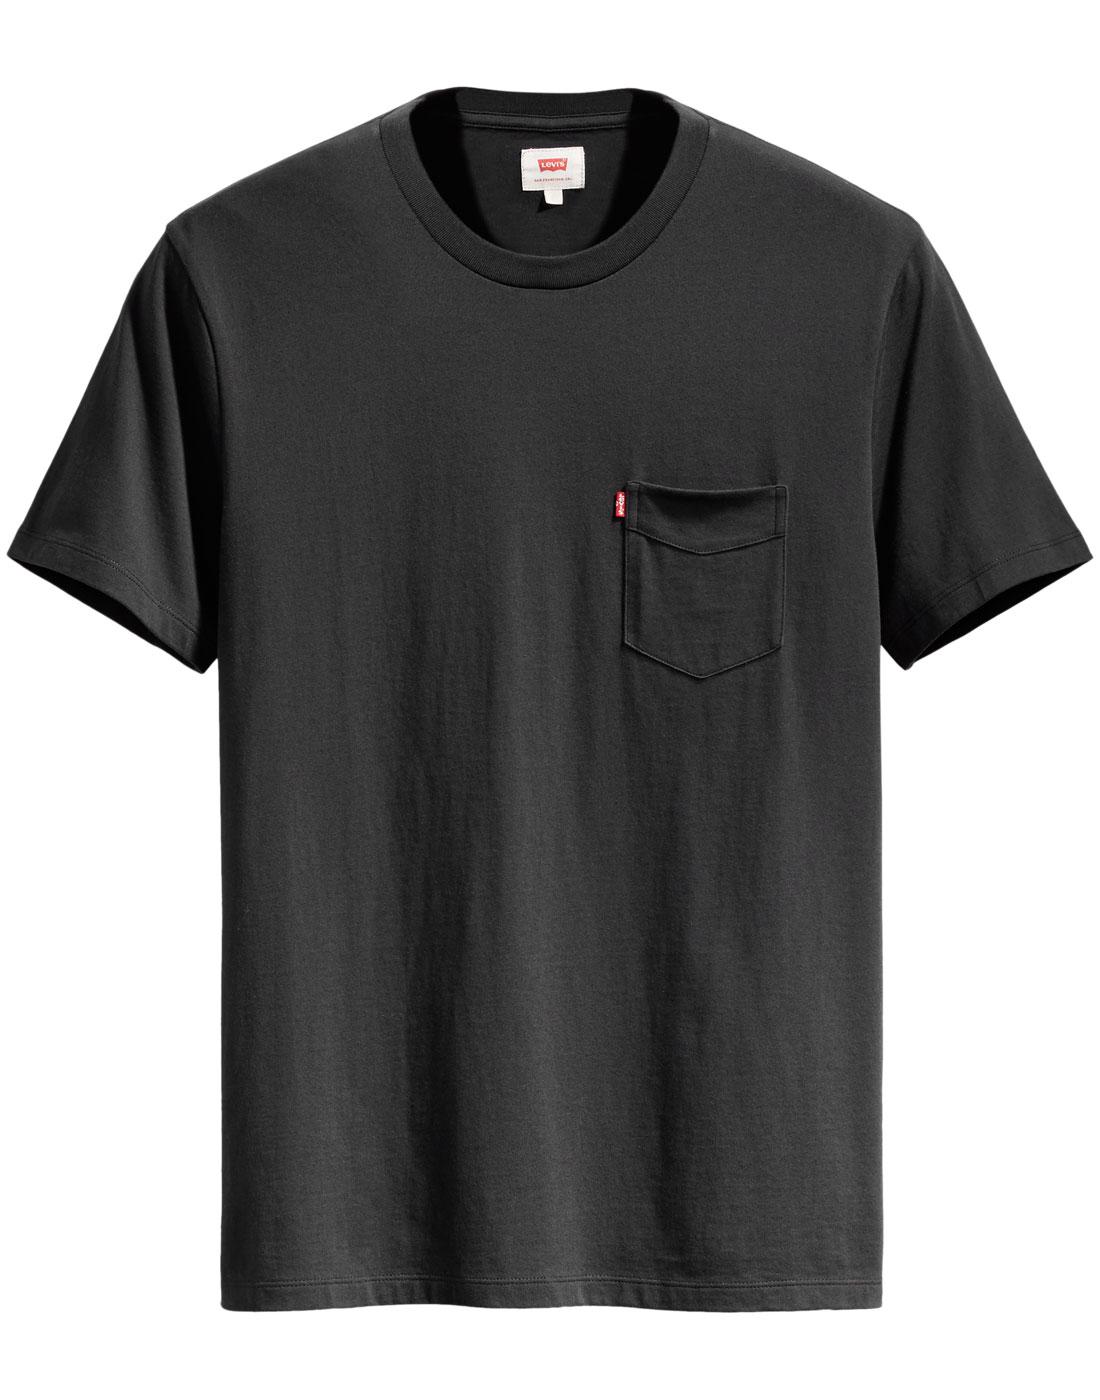 LEVI'S Retro Setin Sunset Pocket T-Shirt (Black)